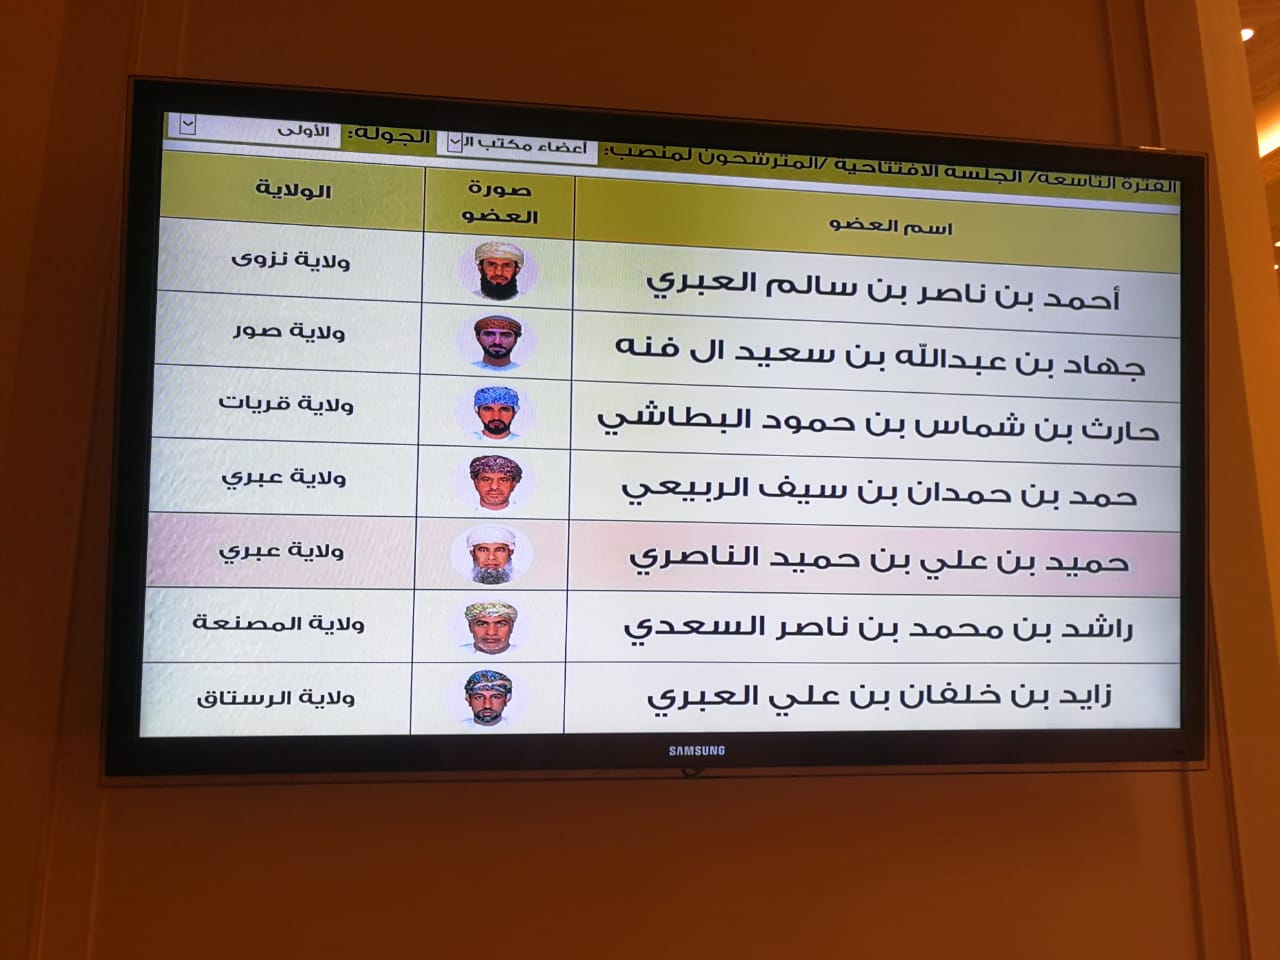 انتخاب 6 أعضاء لمجلس الشورى من بين 30 عضو مترشح